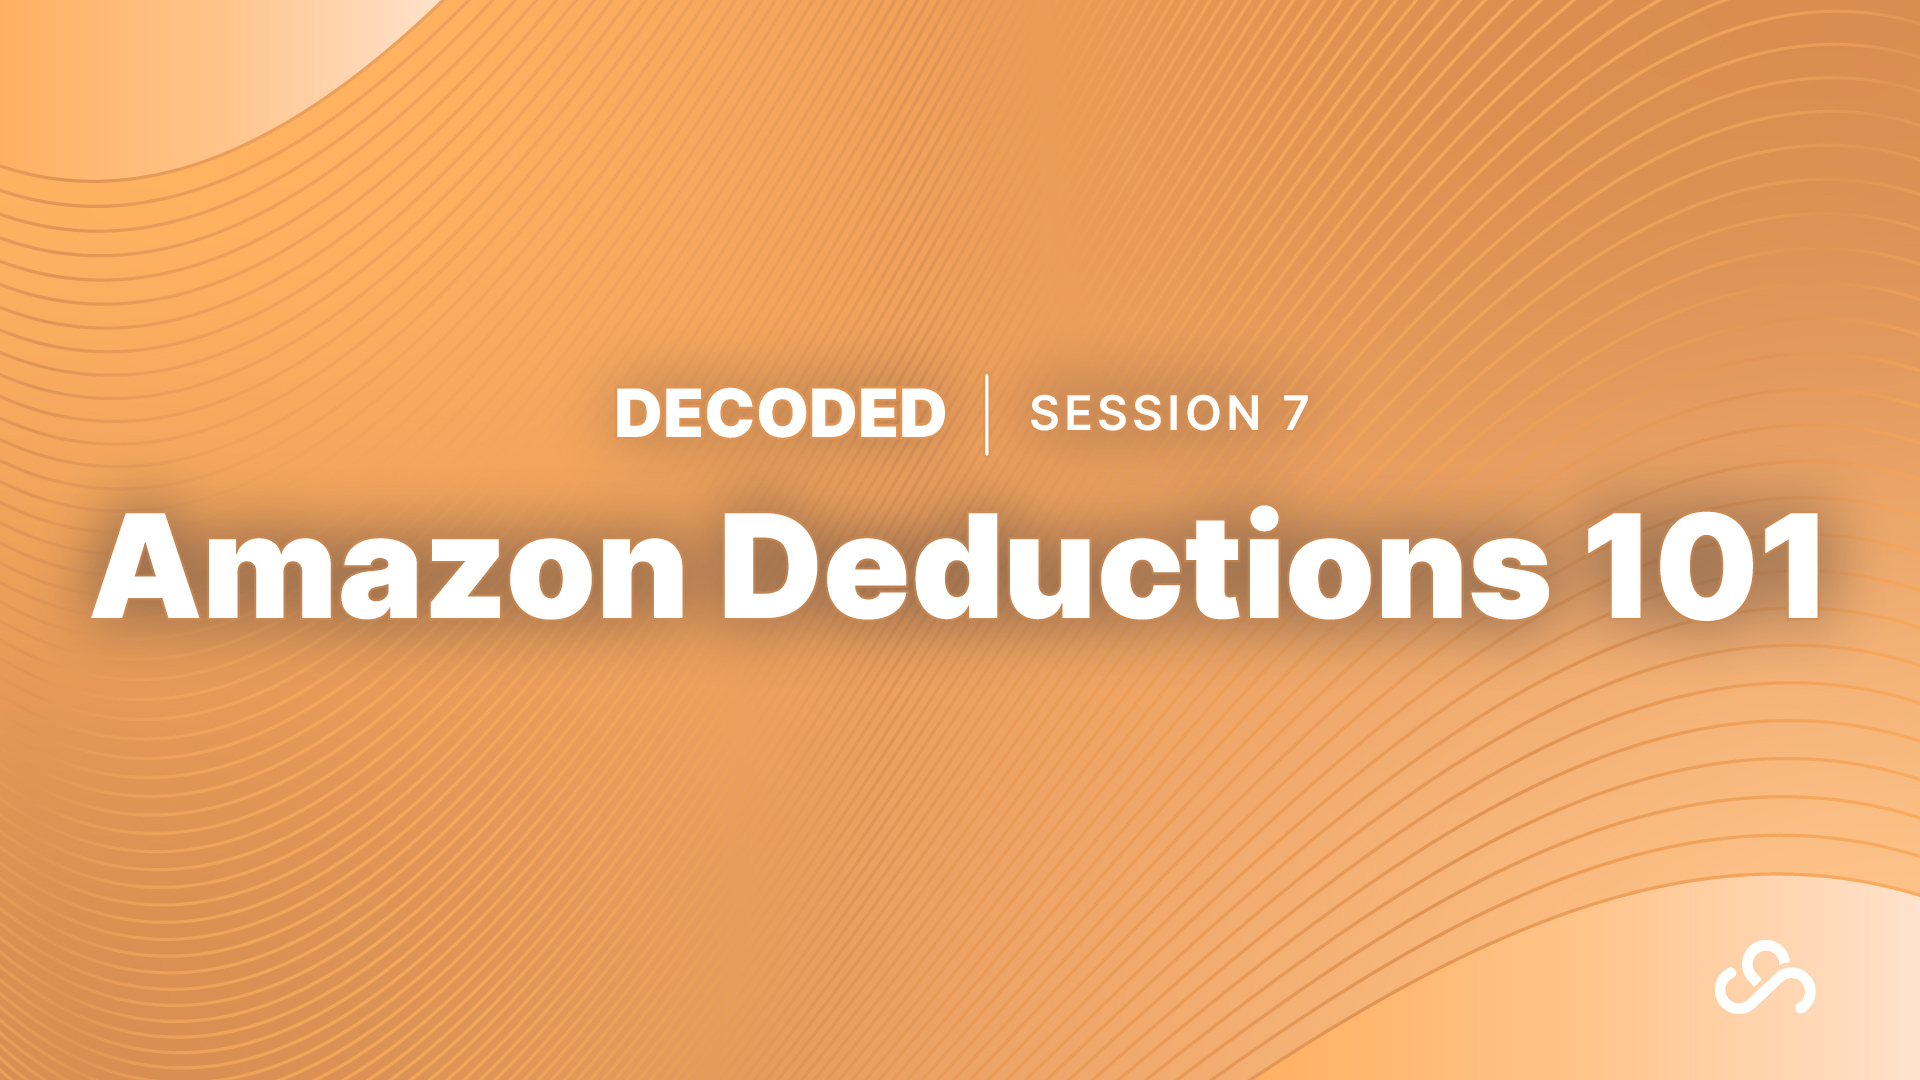 Amazon Deductions 101